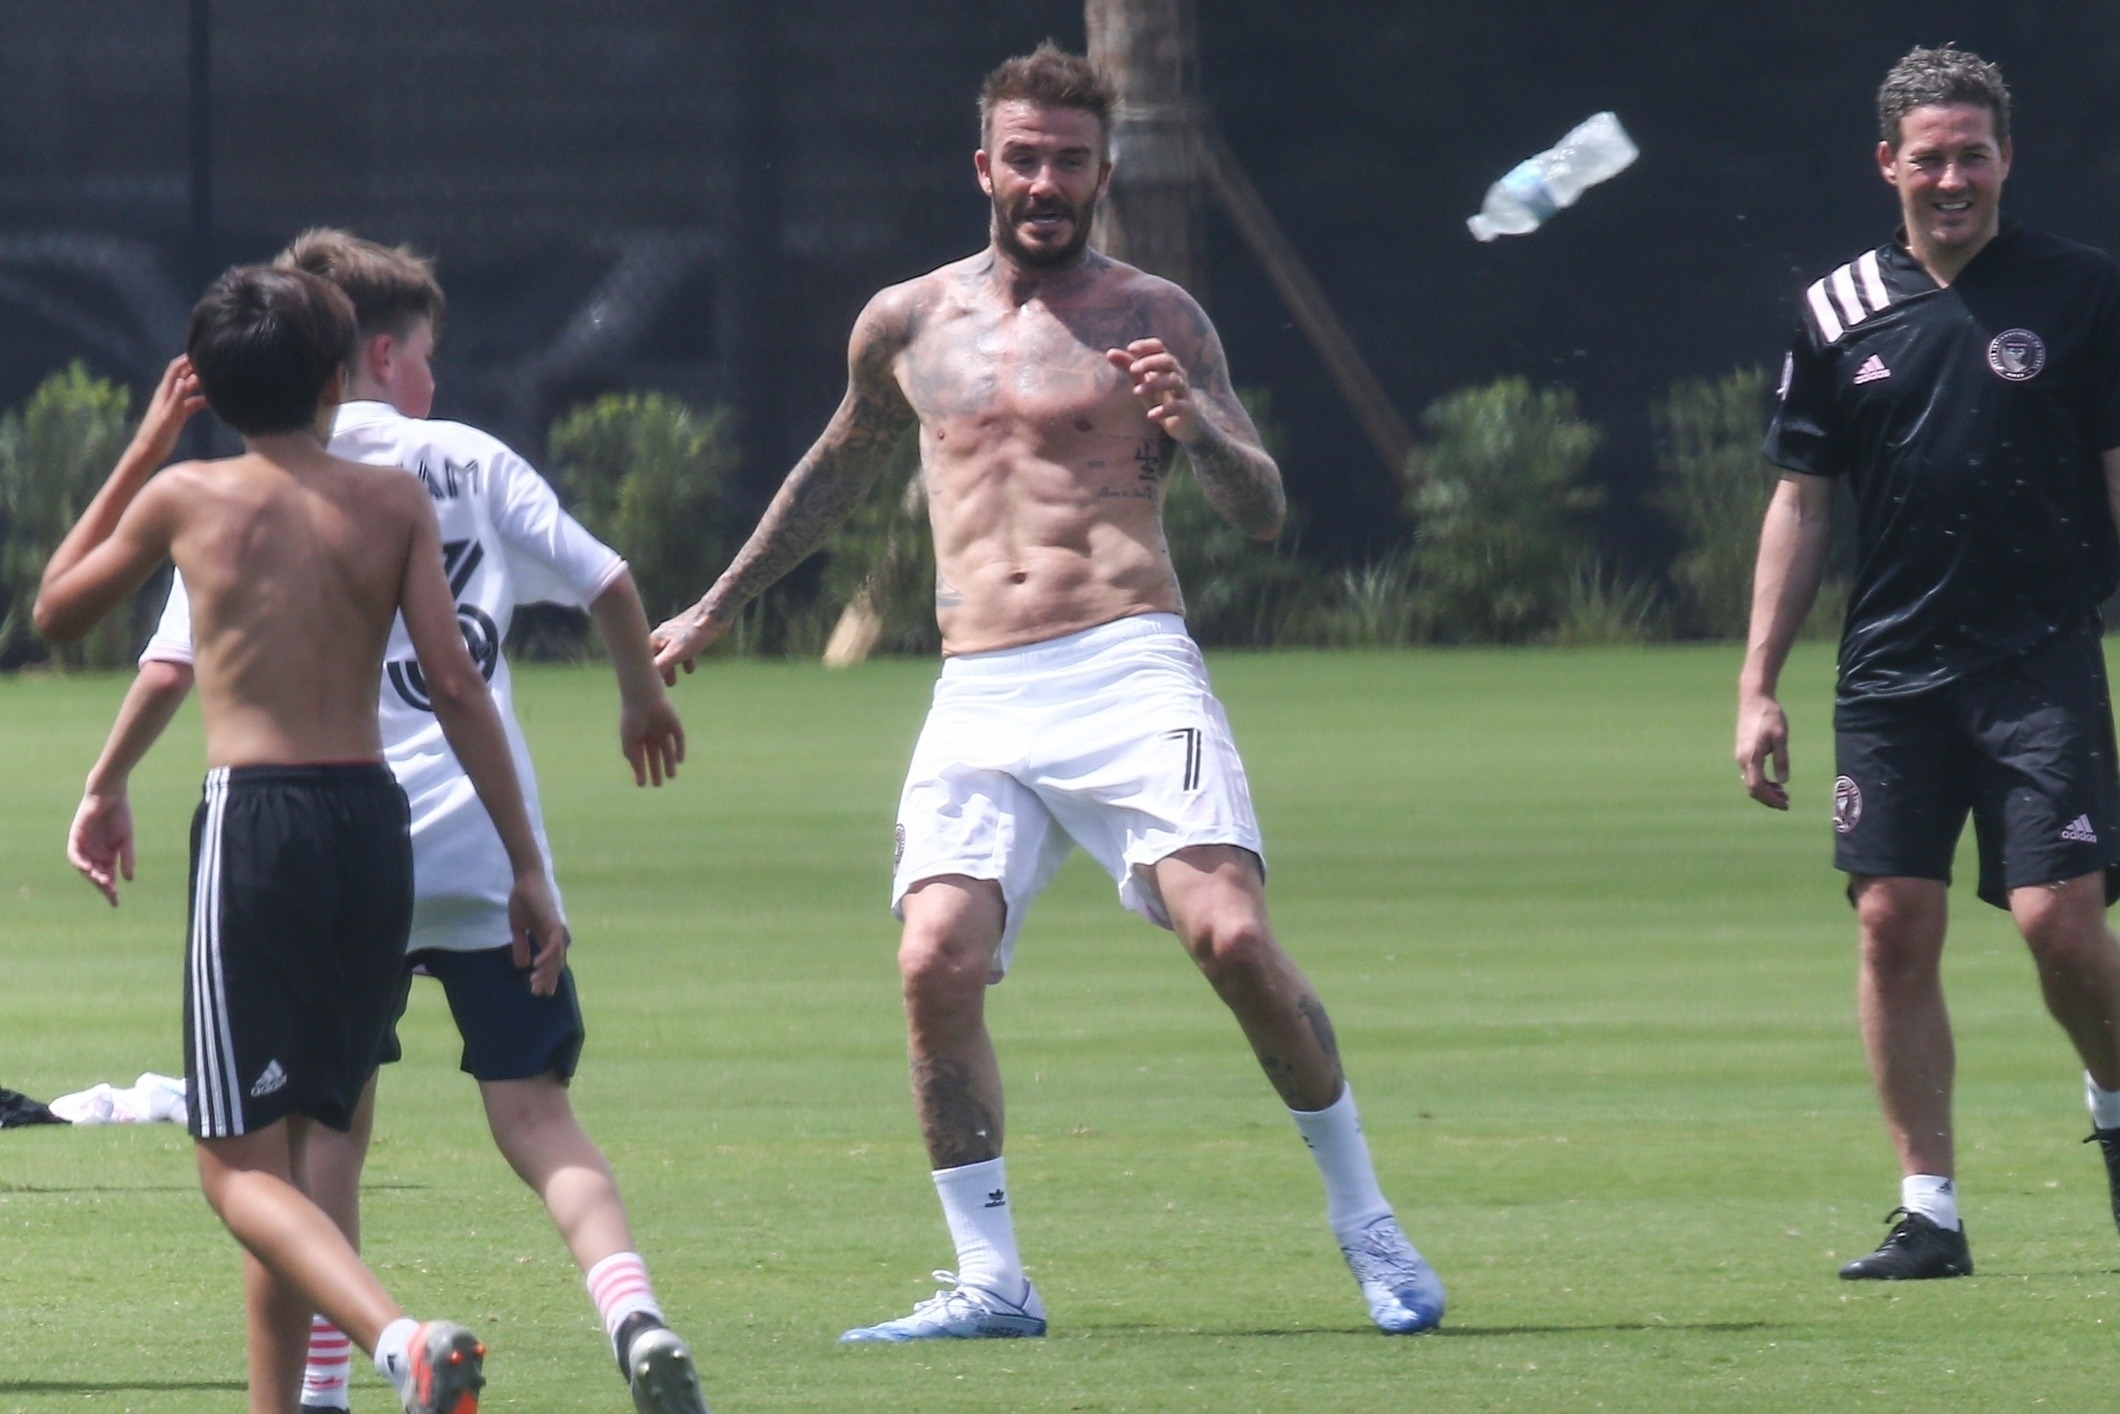 David Beckham bez koszulki. "Becks" wciąż w doskonałej formie - Przegląd  Sportowy